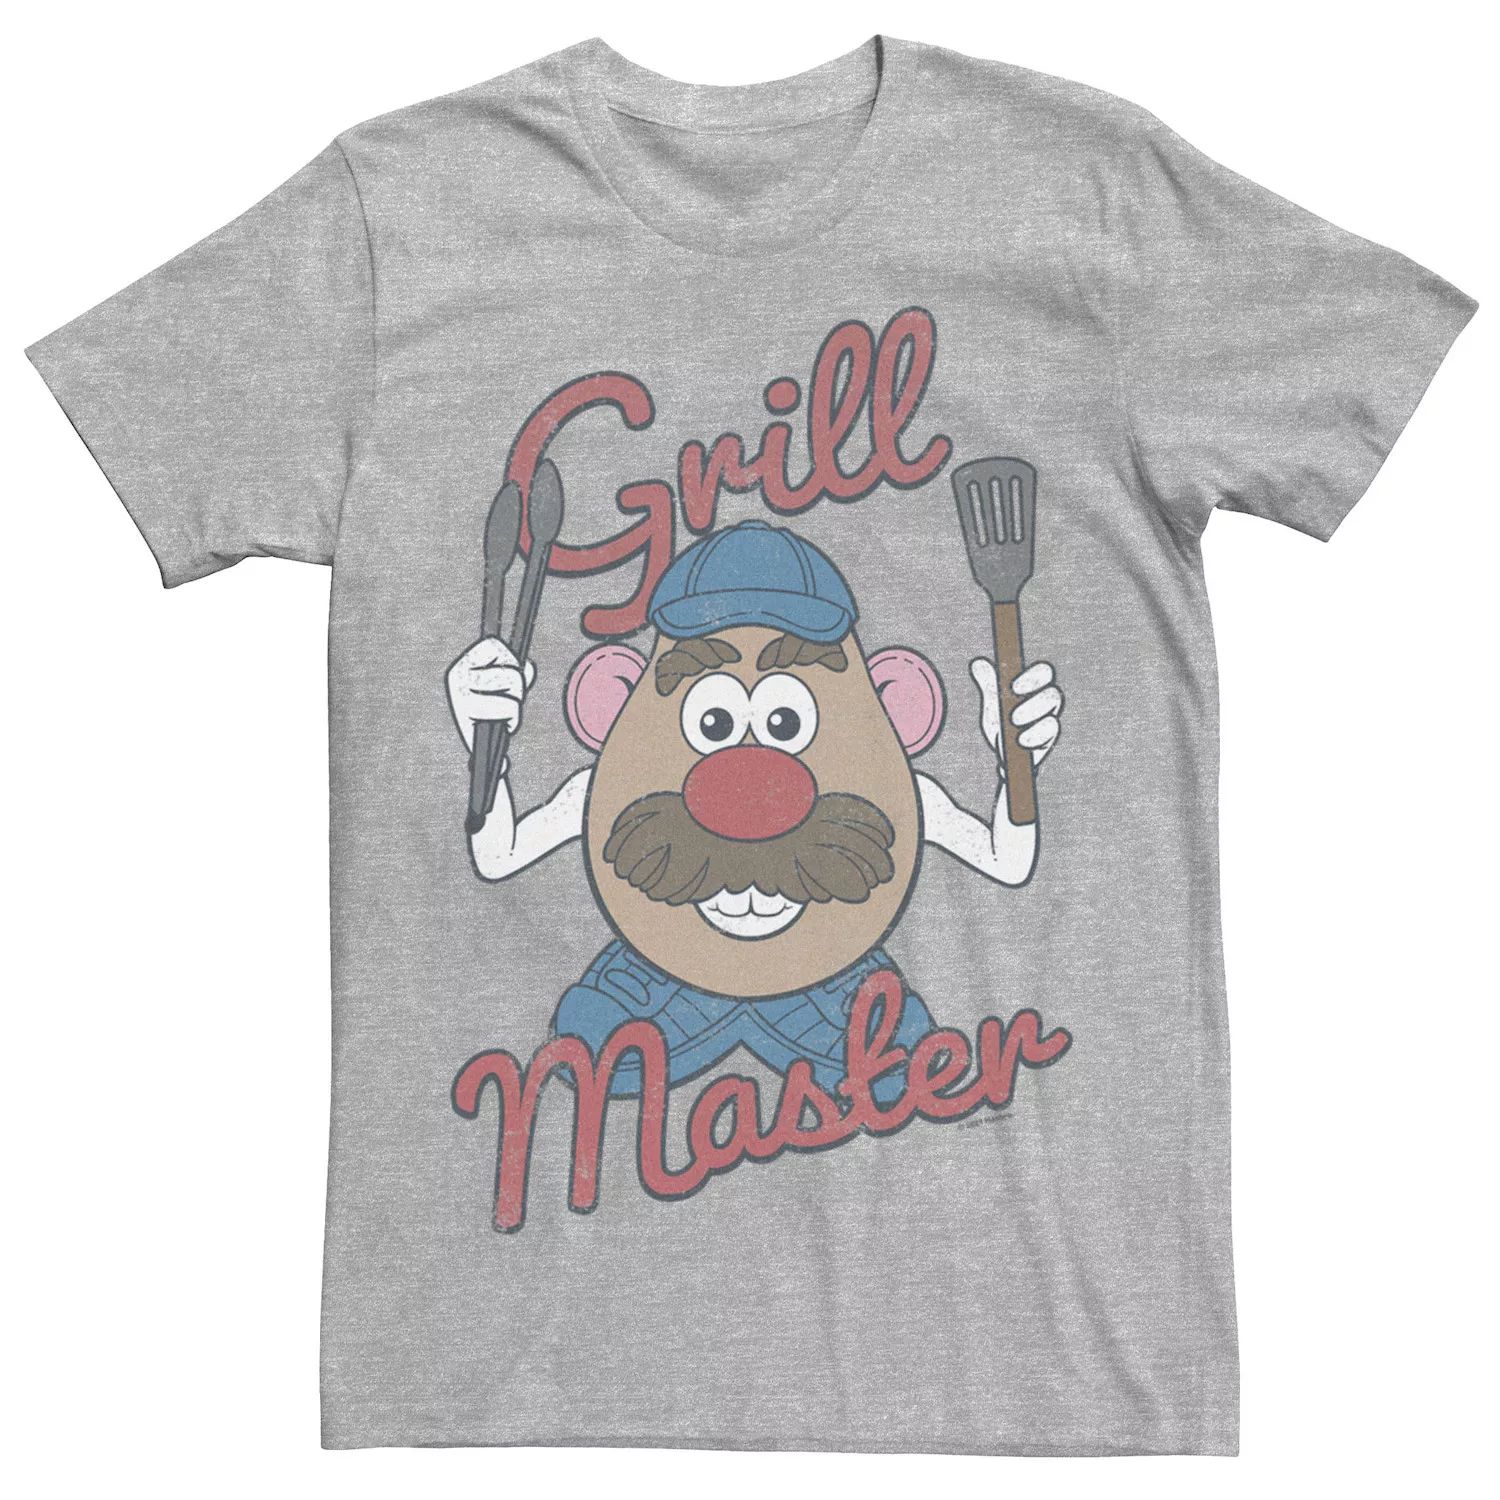 Мужская футболка Mr. Potato Head Grill Master Americana с портретом Licensed Character